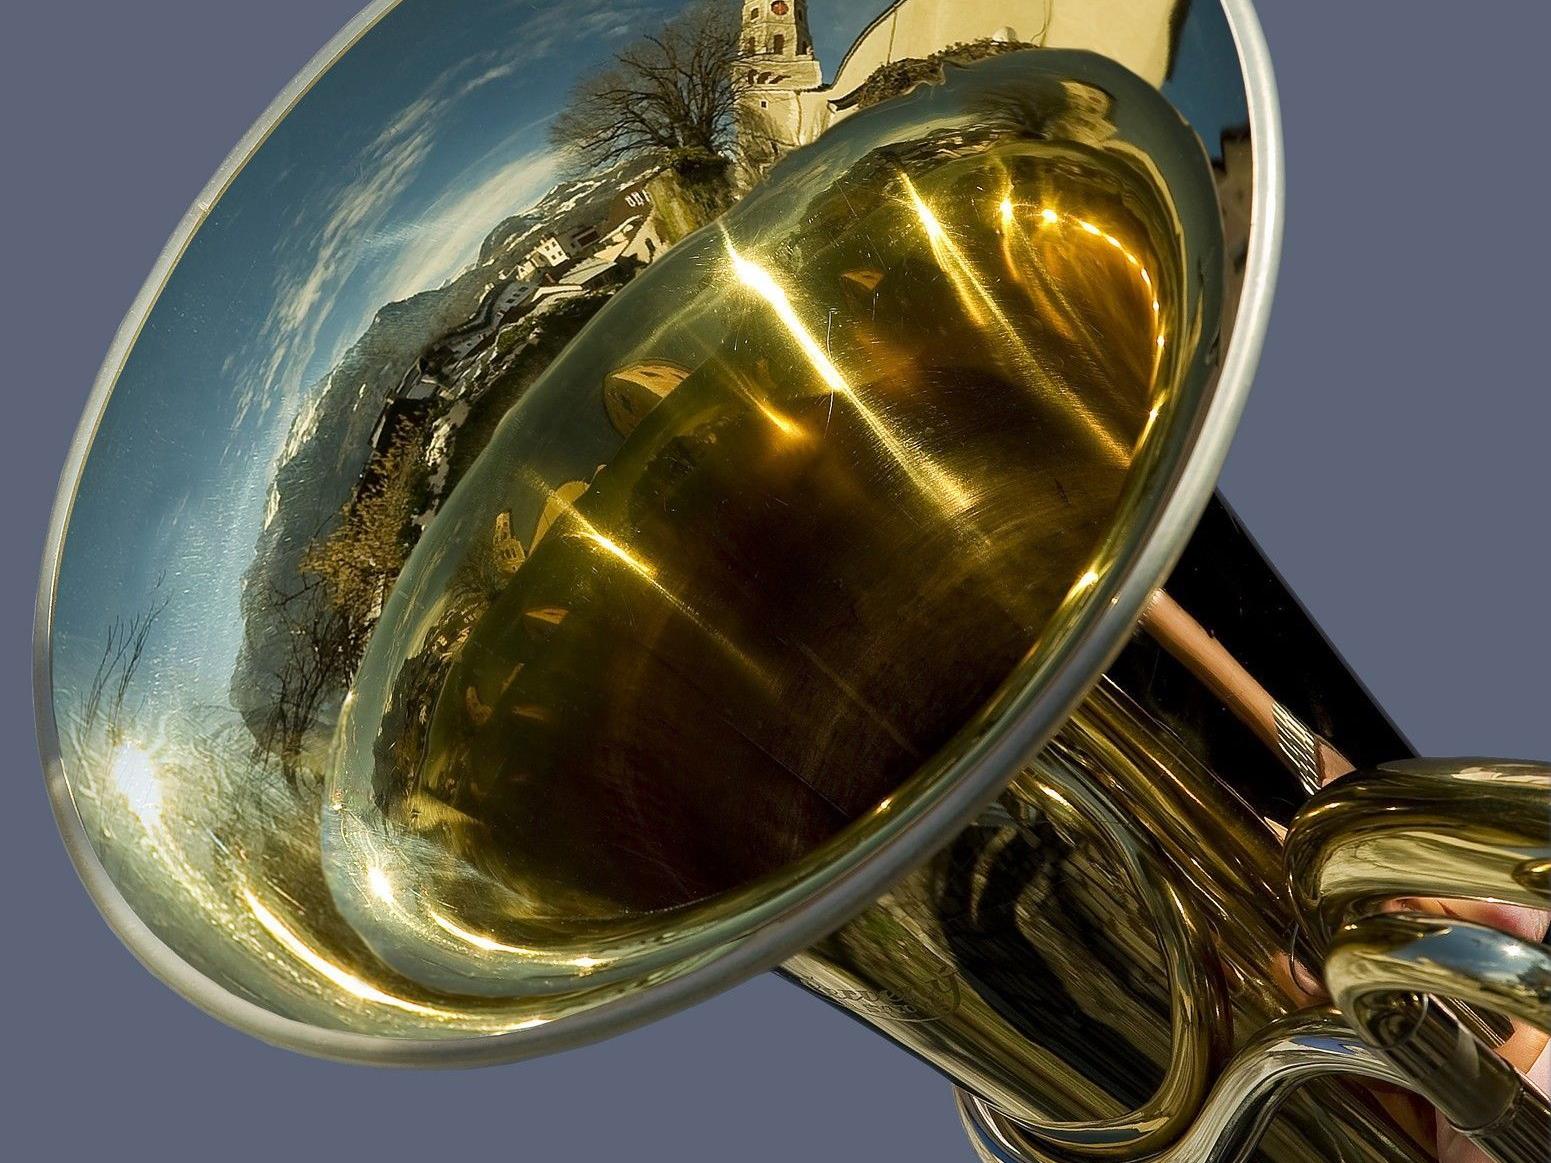 Die Tuba von Karl Huber, deren Töne in der Kulturnacht erklingen.